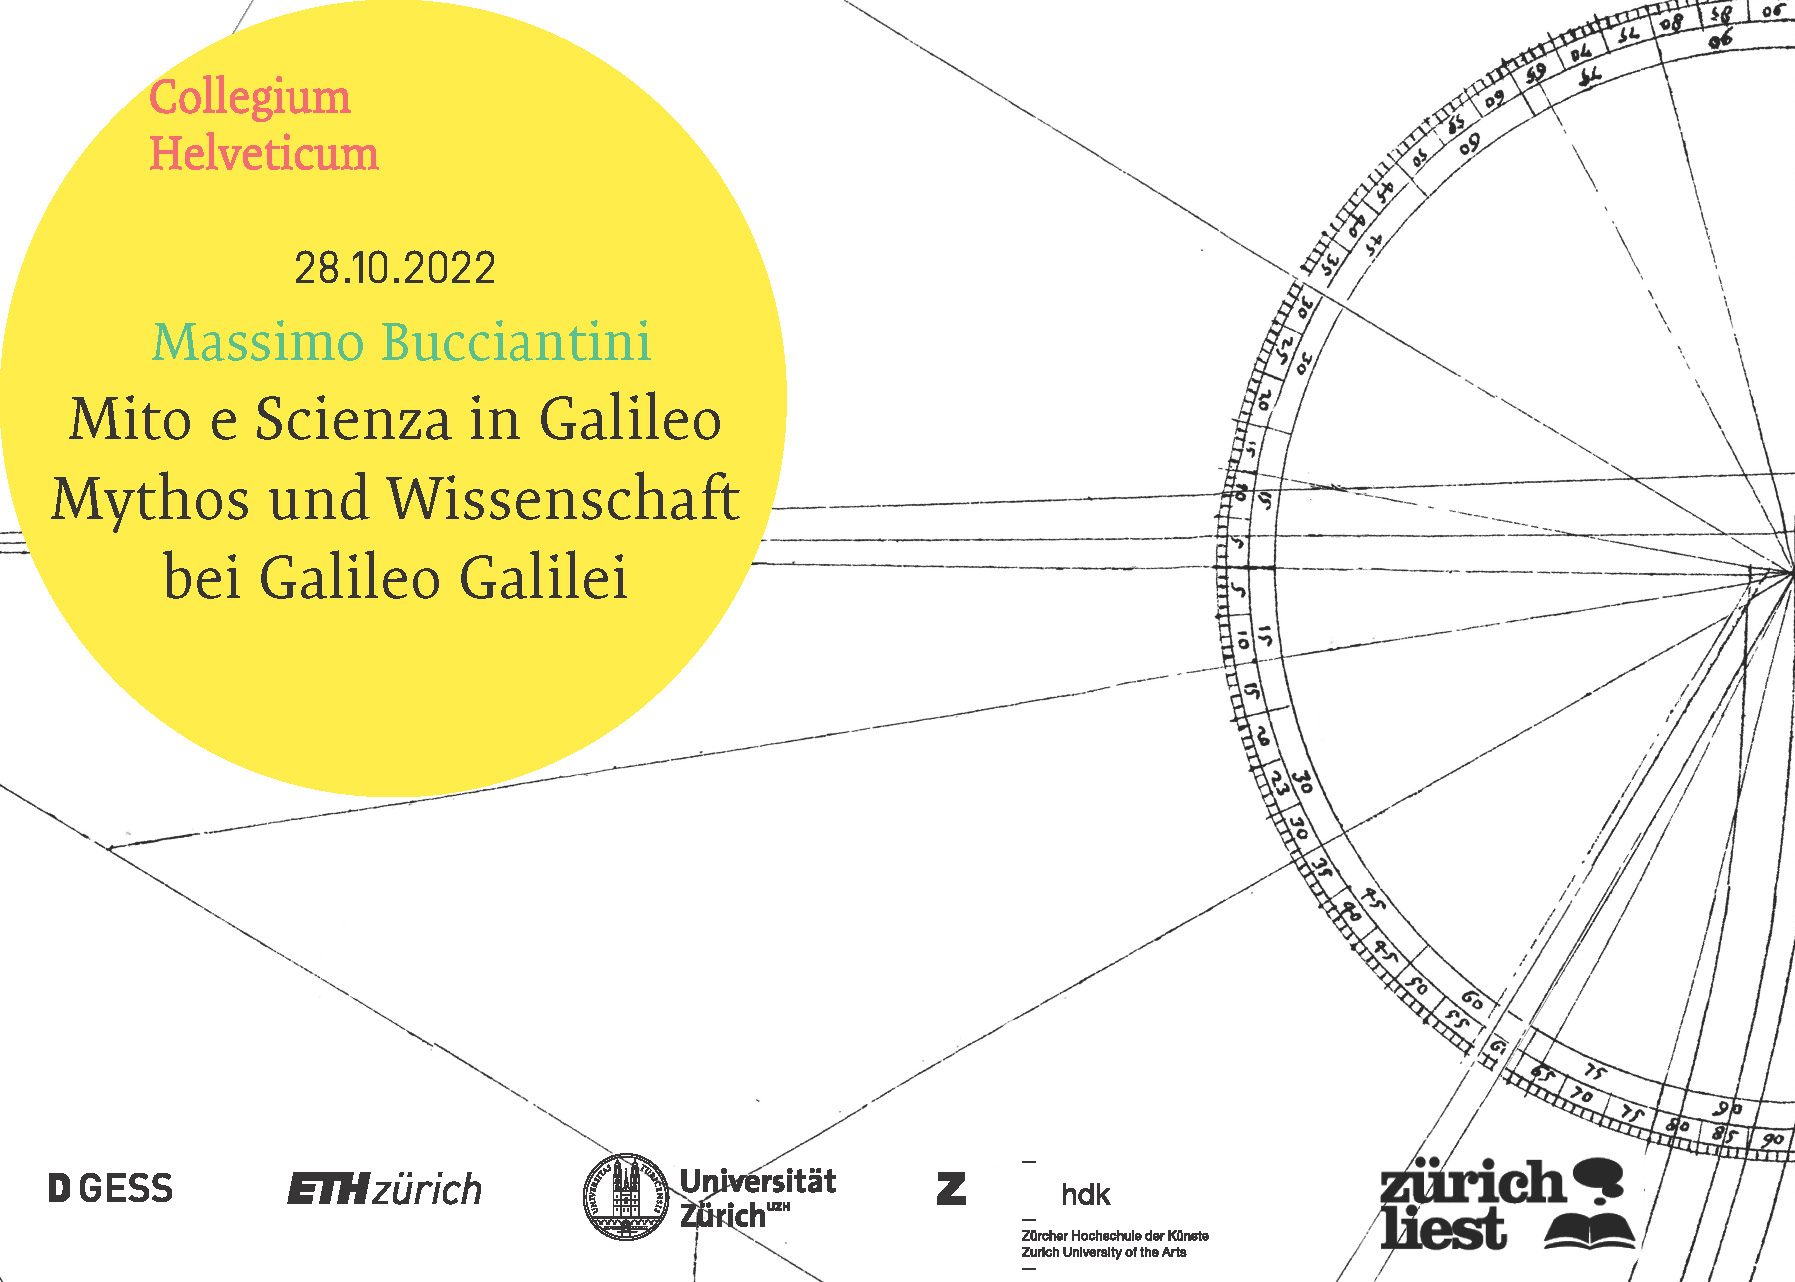 28.10.2022 Massimo Bucciantini, Mito e Scienza in Galileo